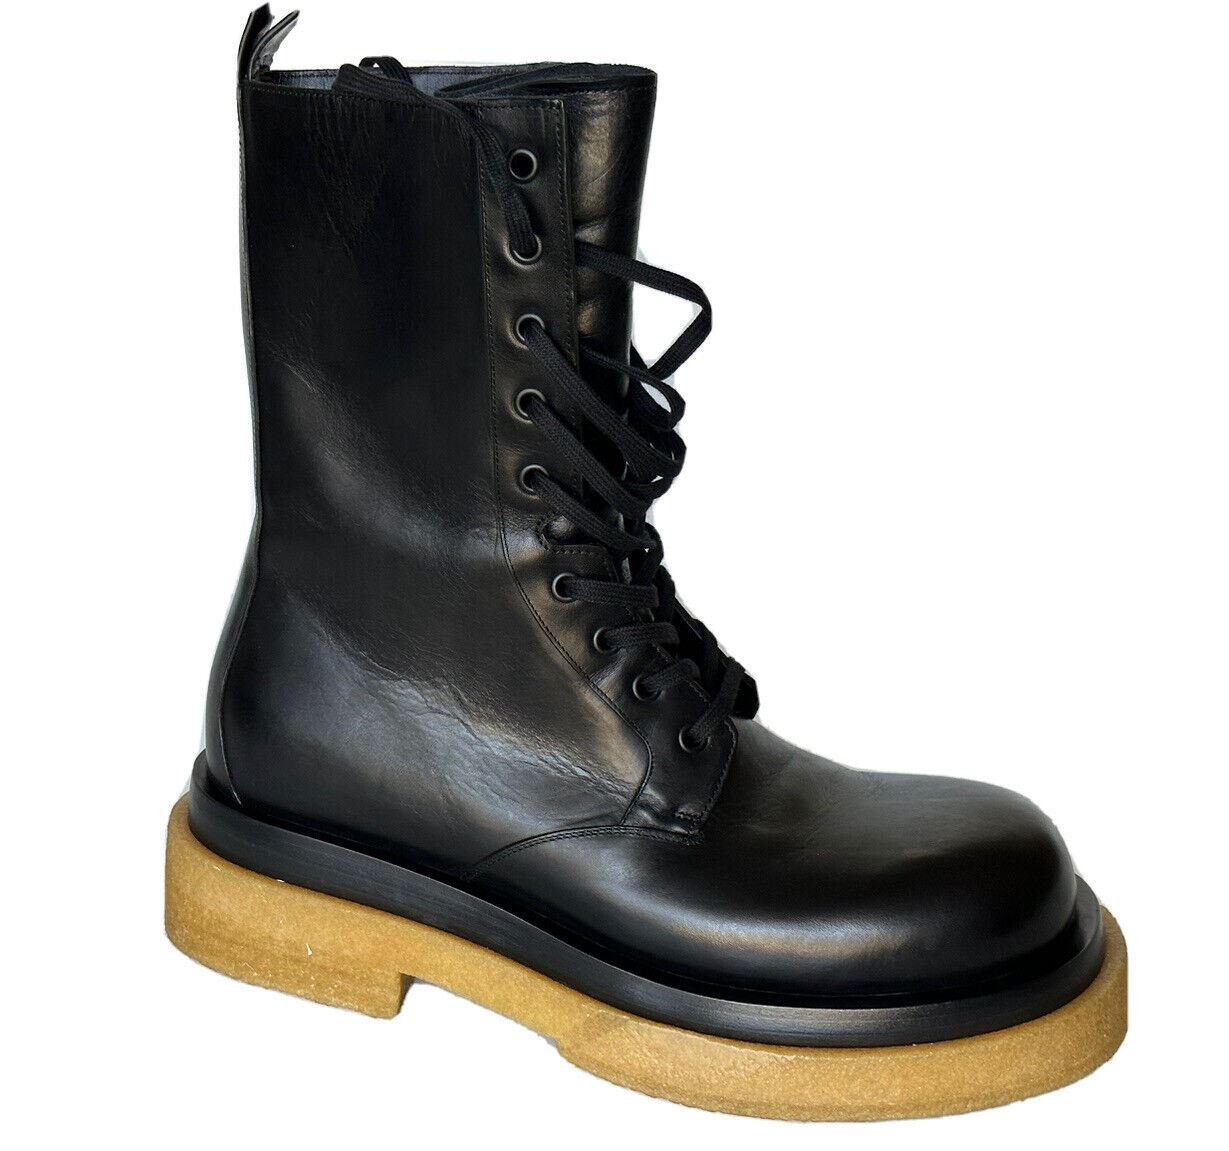 Черные ботинки Bottega Veneta из телячьей кожи в стиле милитари (NIB) за 1450 долларов США 9 США 667093 IT